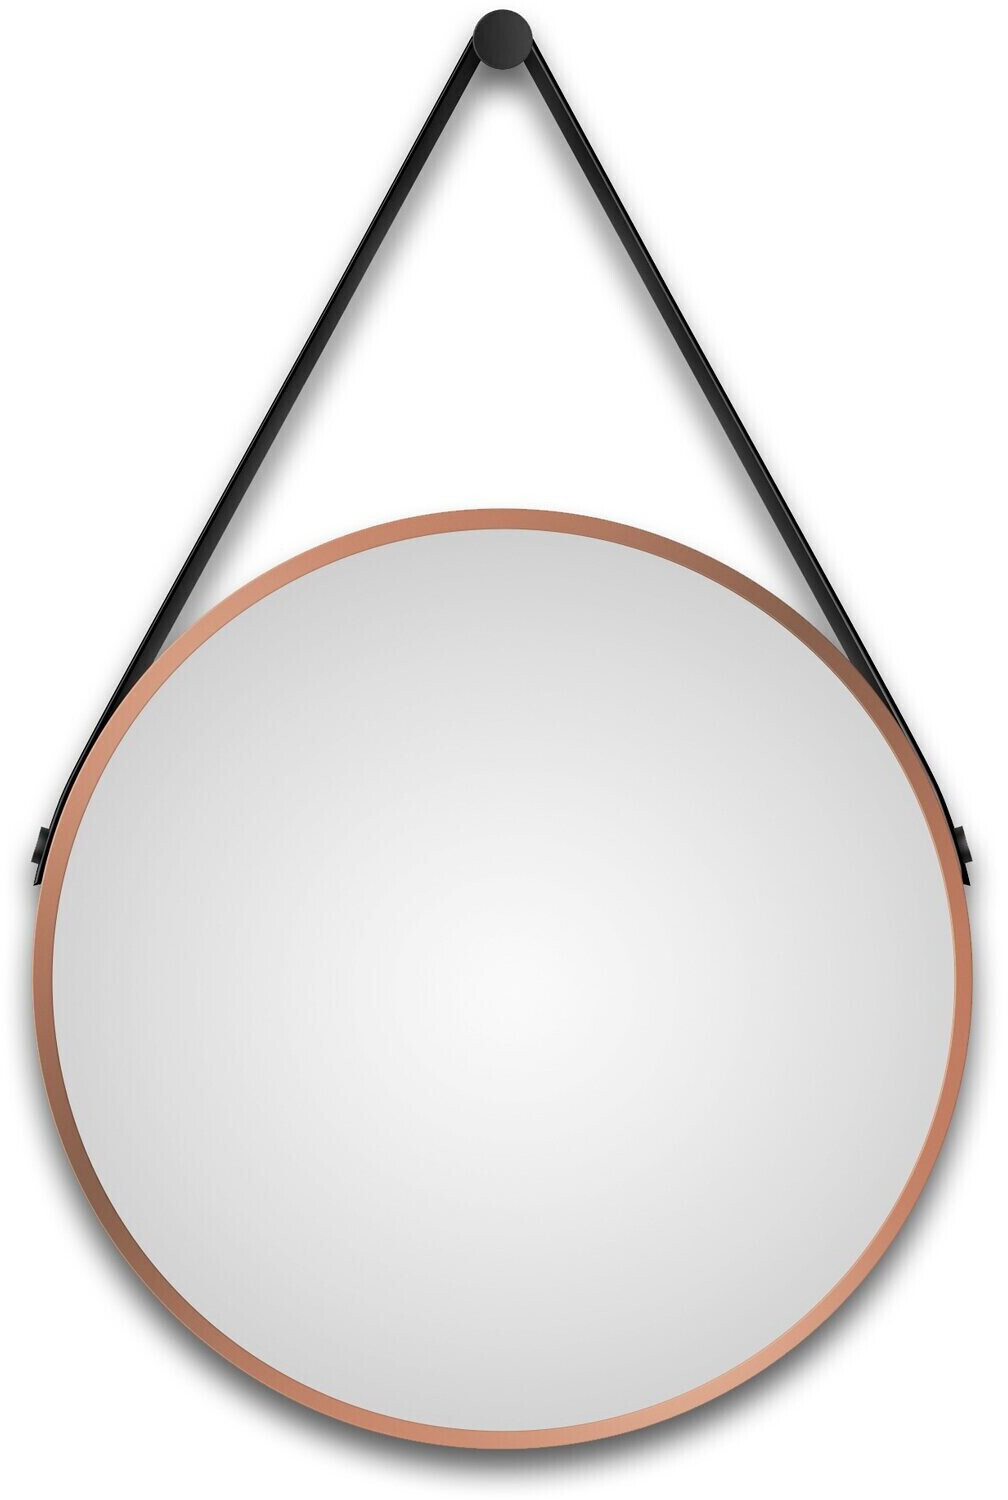 DSK Design Spiegel Silver Coiffeur Ø50cm kupfer (50261) ab € 113,92 |  Preisvergleich bei